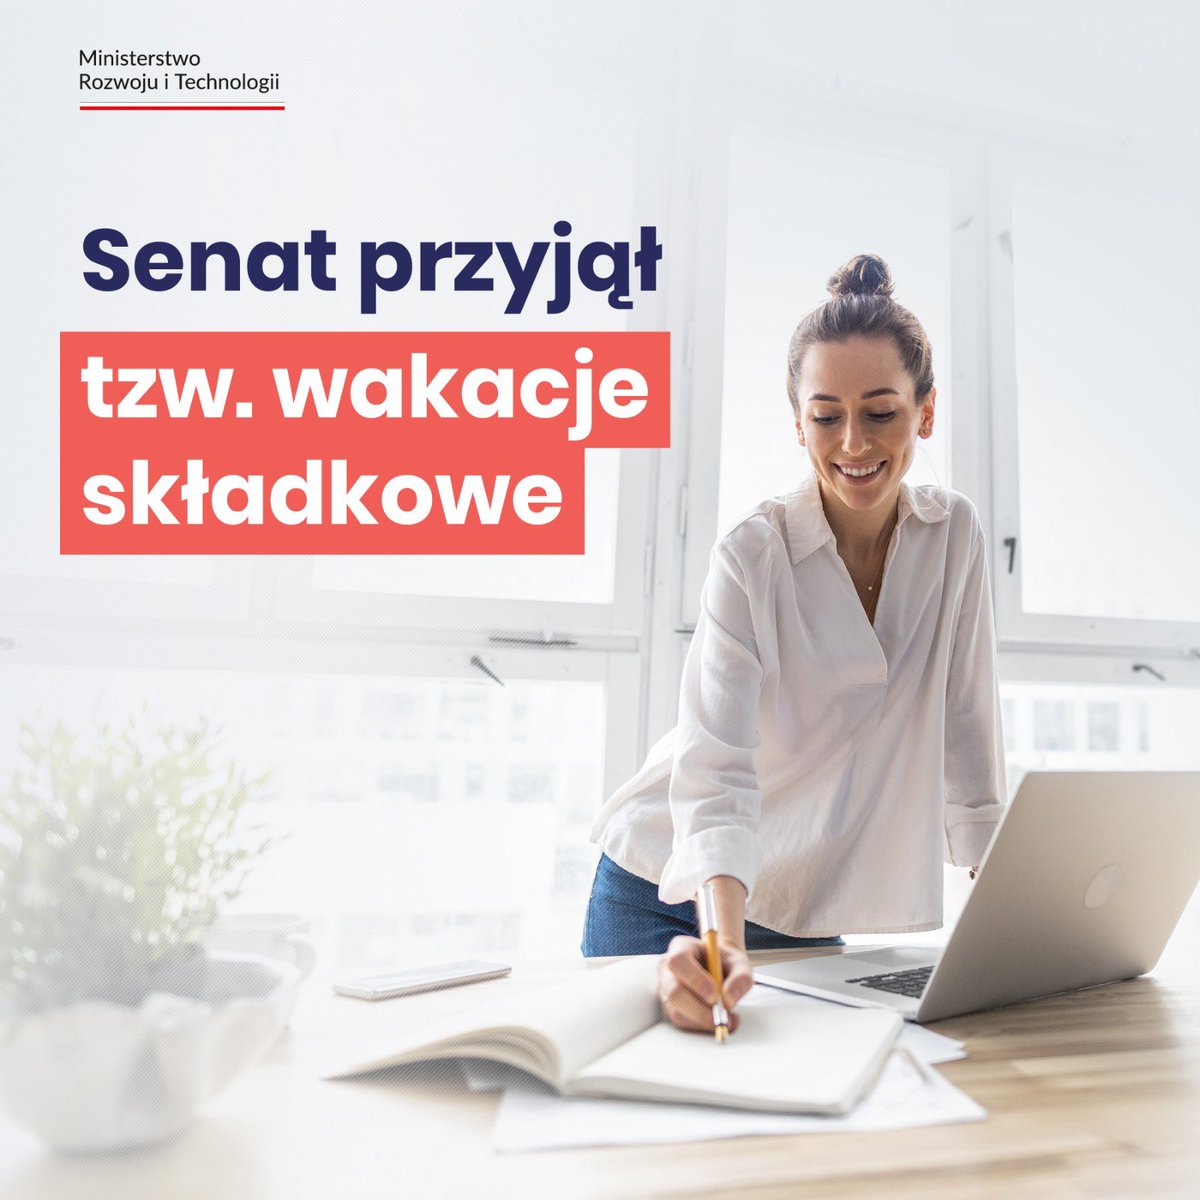 Wakacje składkowe dla przedsiębiorców coraz bliżej! @PolskiSenat przyjął #UrlopDlaPrzedsiębiorców. Rozwiązanie zapewni coroczne obniżenie kosztów prowadzenia działalności gospodarczej. Szacujemy, że z wakacji składkowych będzie mogło skorzystać ok. 1,7 mln osób.